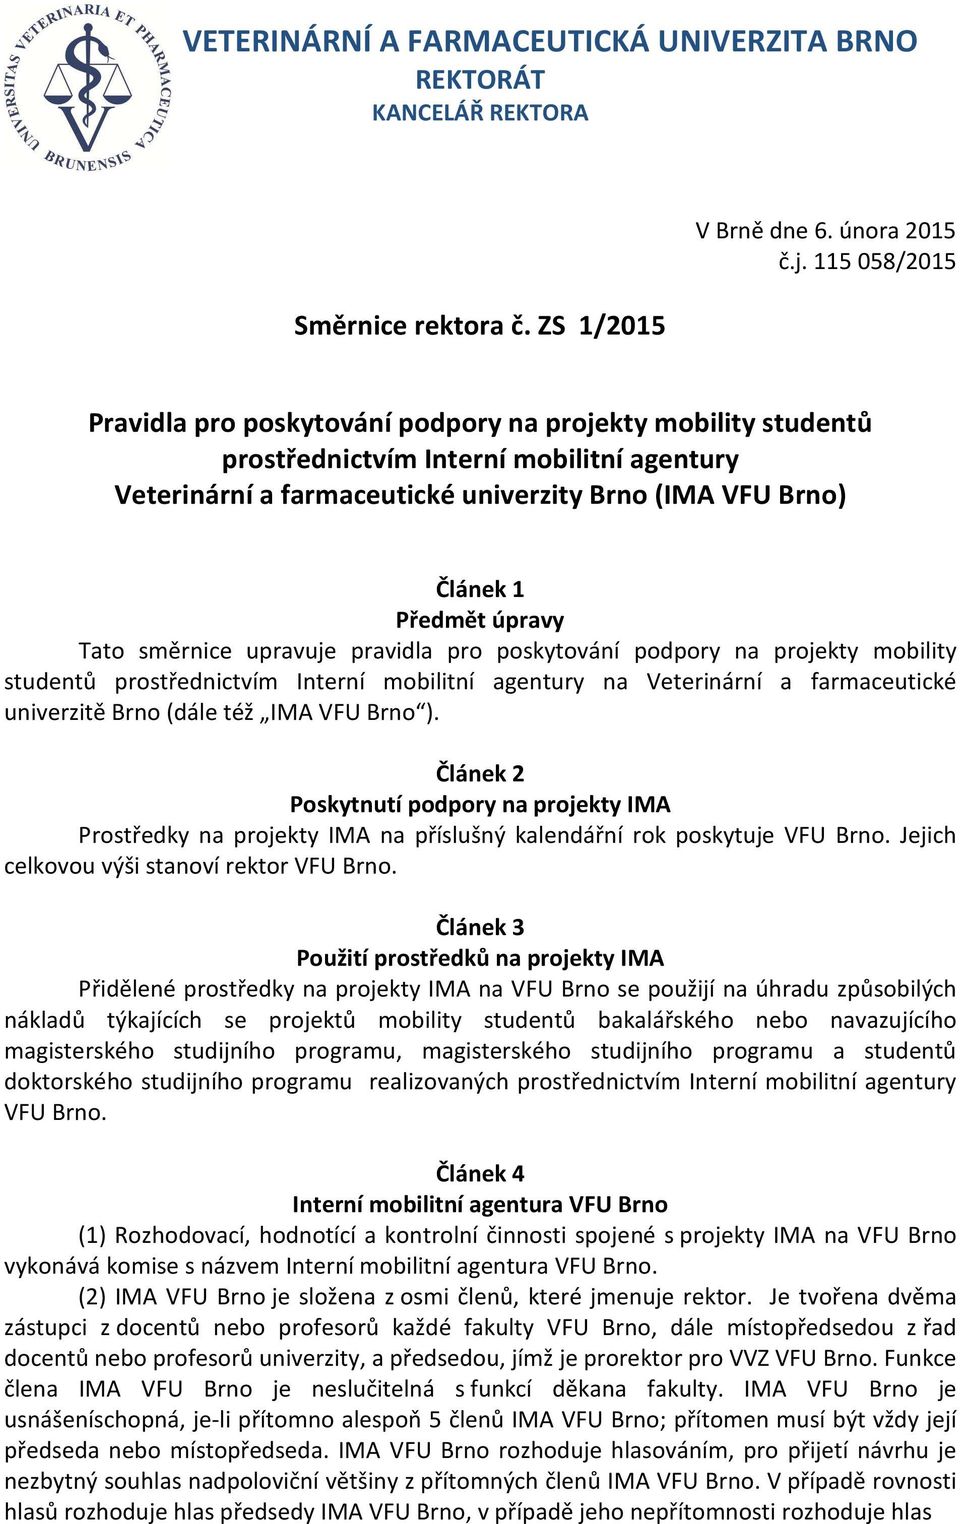 úpravy Tato směrnice upravuje pravidla pro poskytování podpory na projekty mobility studentů prostřednictvím Interní mobilitní agentury na Veterinární a farmaceutické univerzitě Brno (dále též IMA